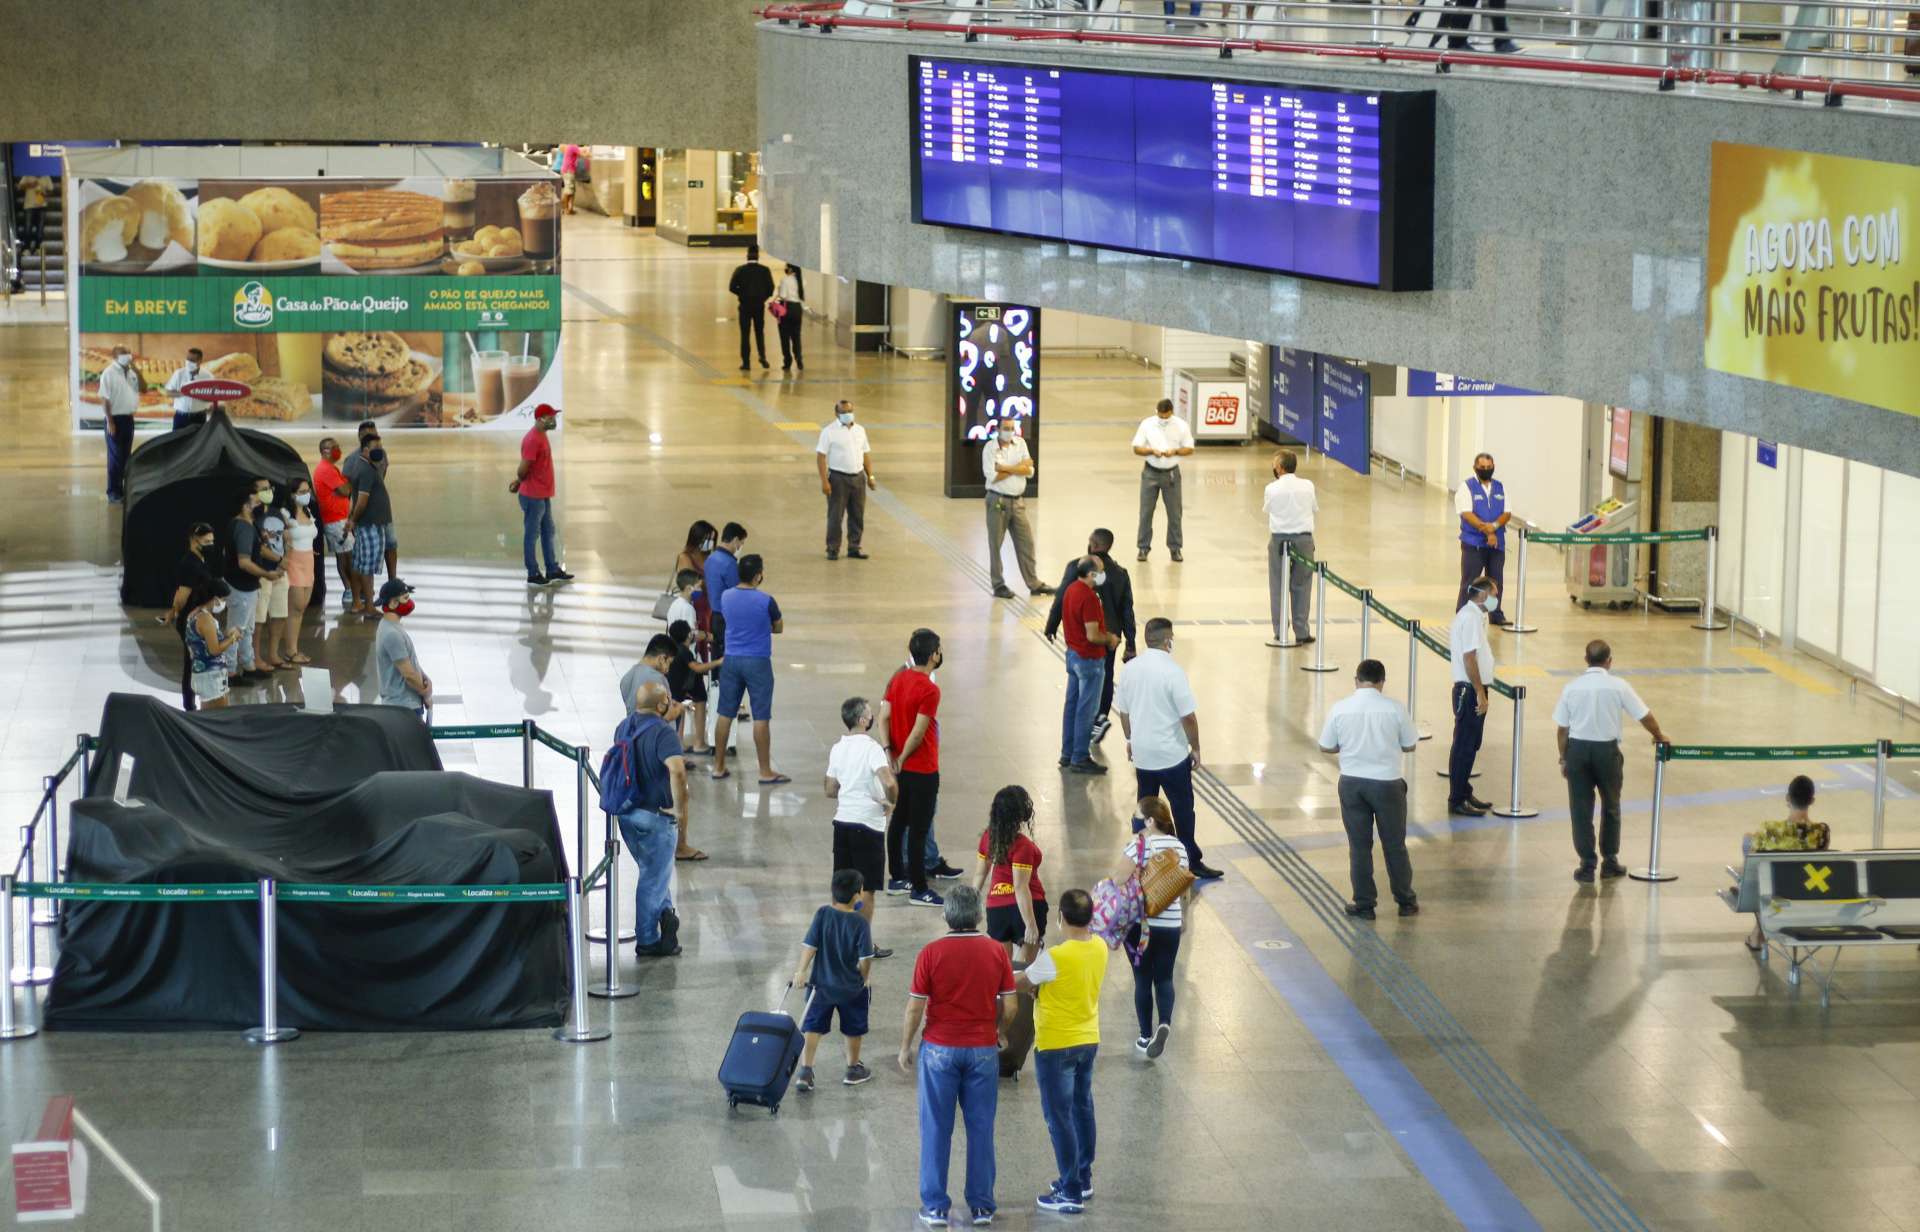 Movimentação de passageiros e voos no Aeroporto de Fortaleza caiu consideravelmente em 2020 devido à crise provocada pela pandemia do novo coronavírus (Foto: Barbara Moira)